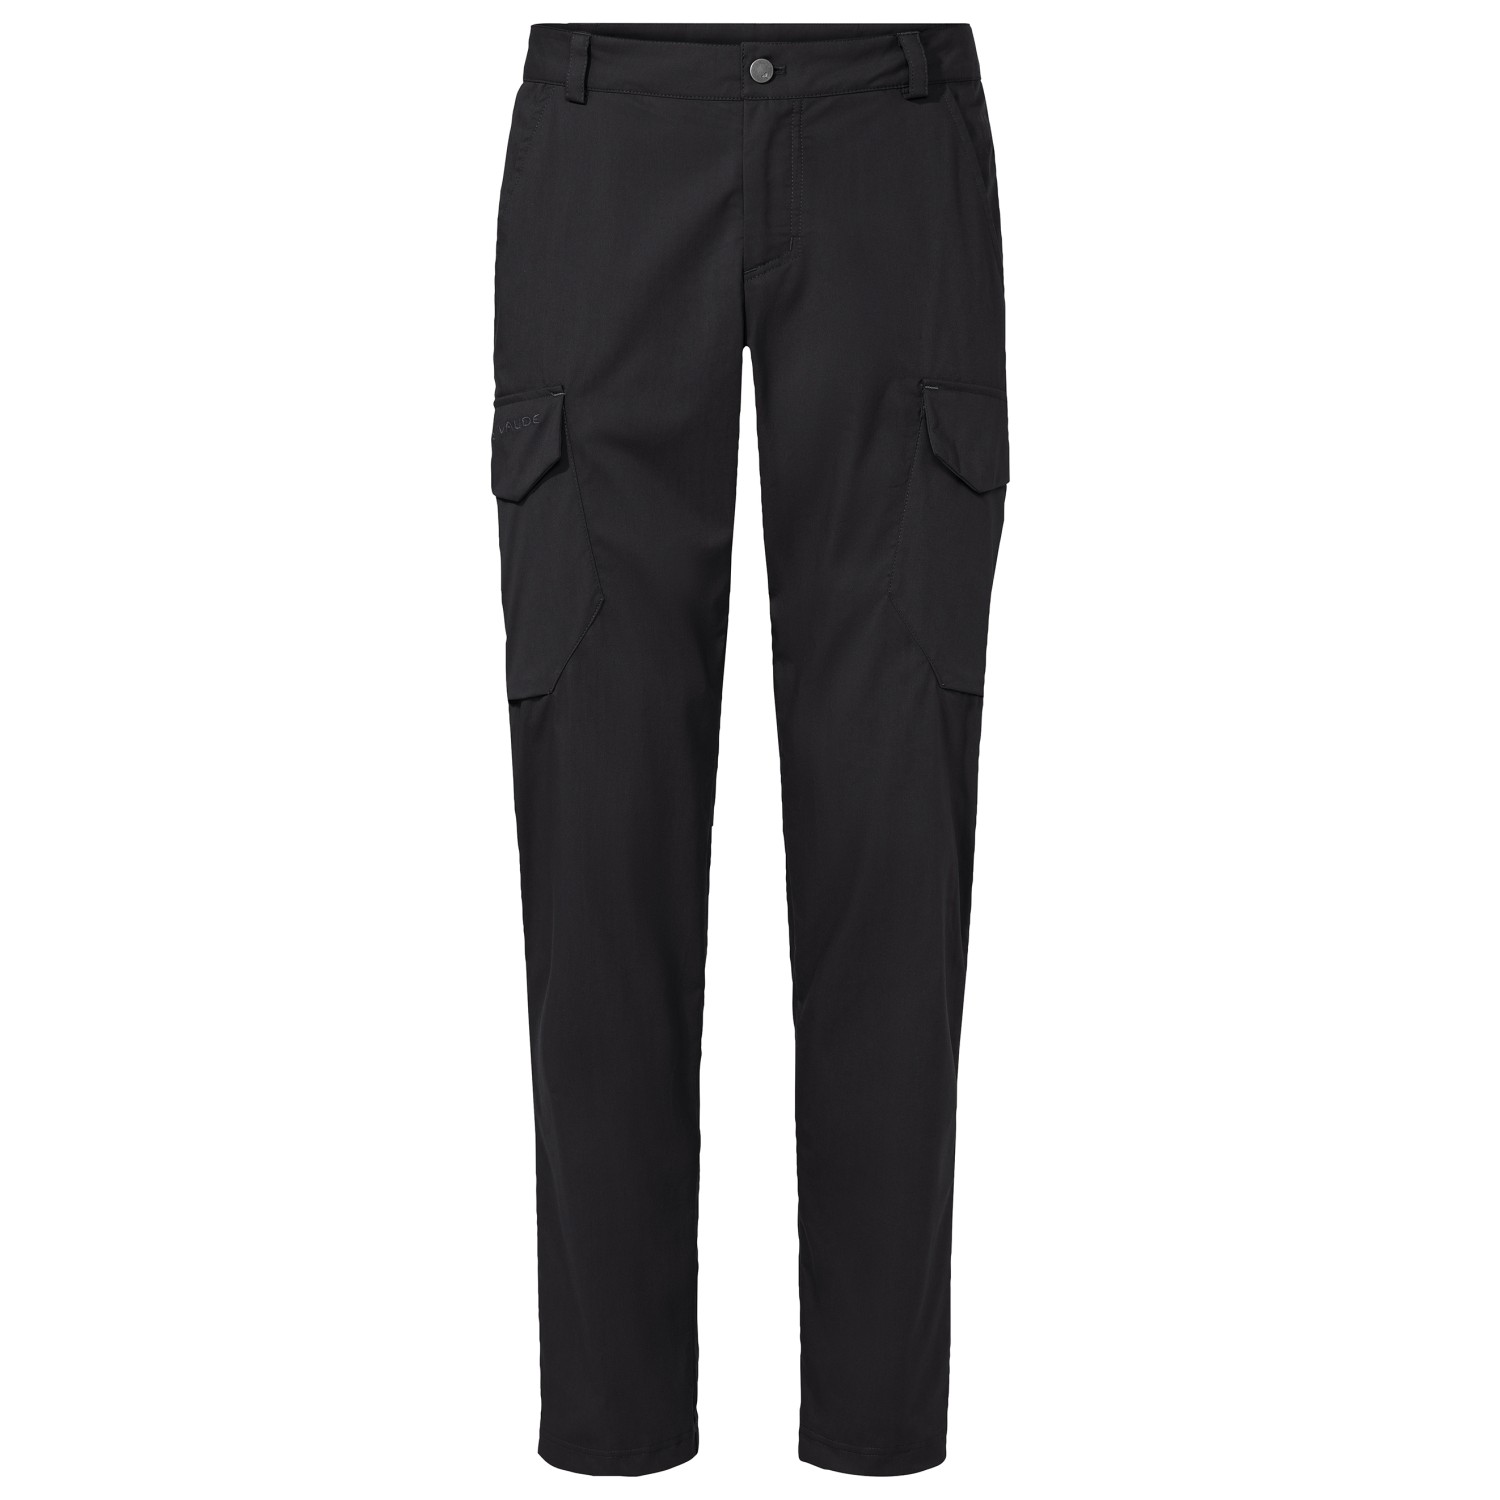 Трекинговые брюки Vaude Neyland Cargo, черный terrific cargo pants all match young buckle design men jogger sweatpant men cargo pants autumn trousers